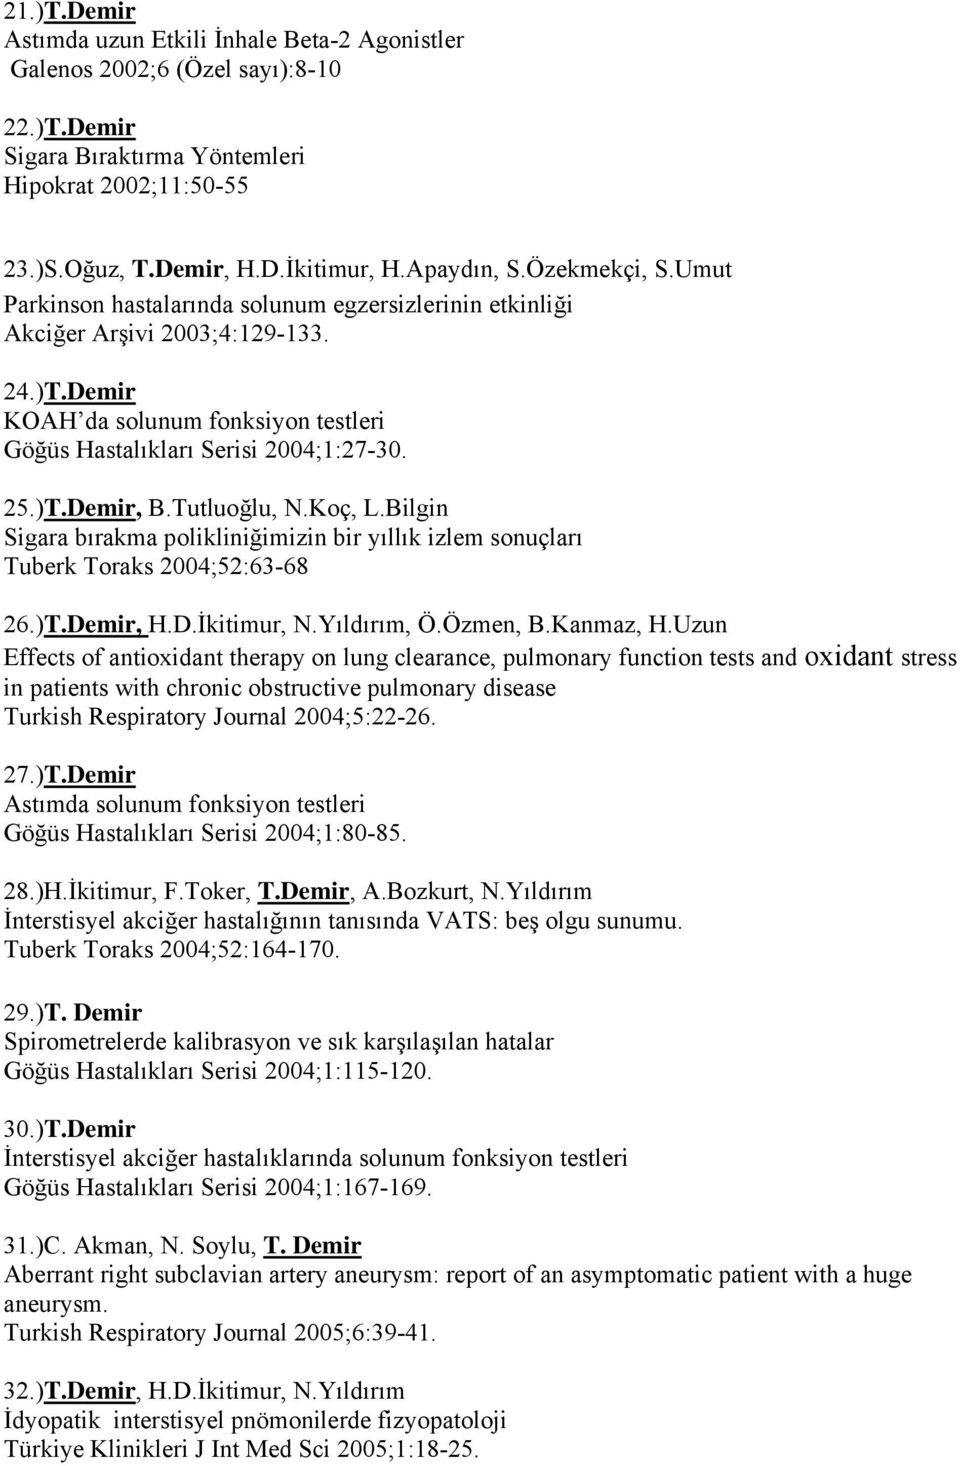 Demir KOAH da solunum fonksiyon testleri Göğüs Hastalıkları Serisi 2004;1:27-30. 25.)T.Demir, B.Tutluoğlu, N.Koç, L.